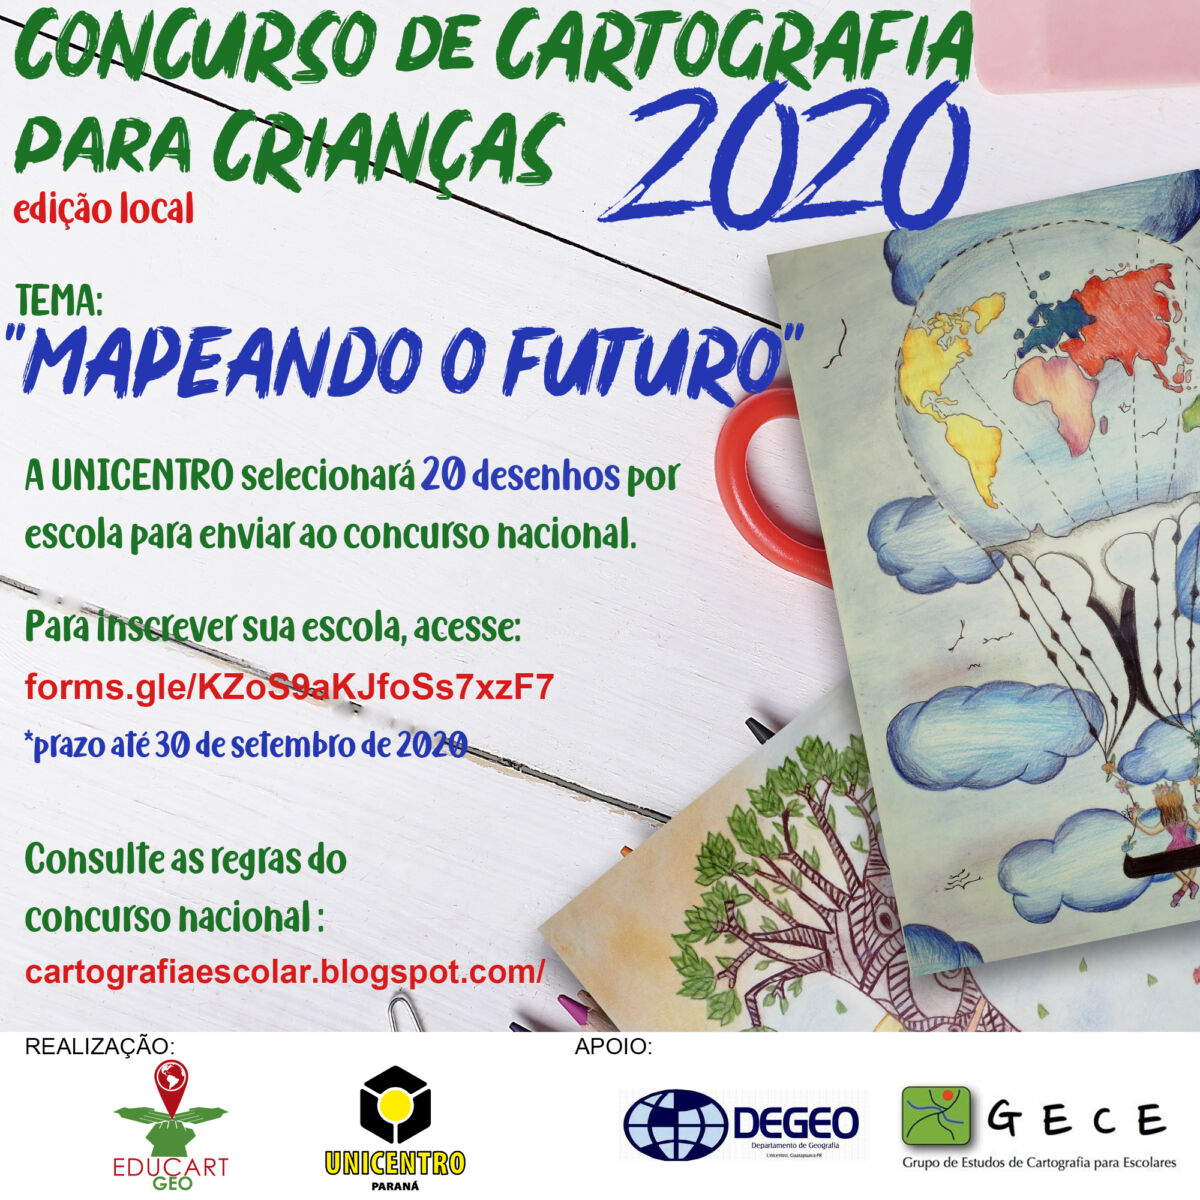 CONCURSO CARTOGRAFIA PARA CRIANÇAS 2020